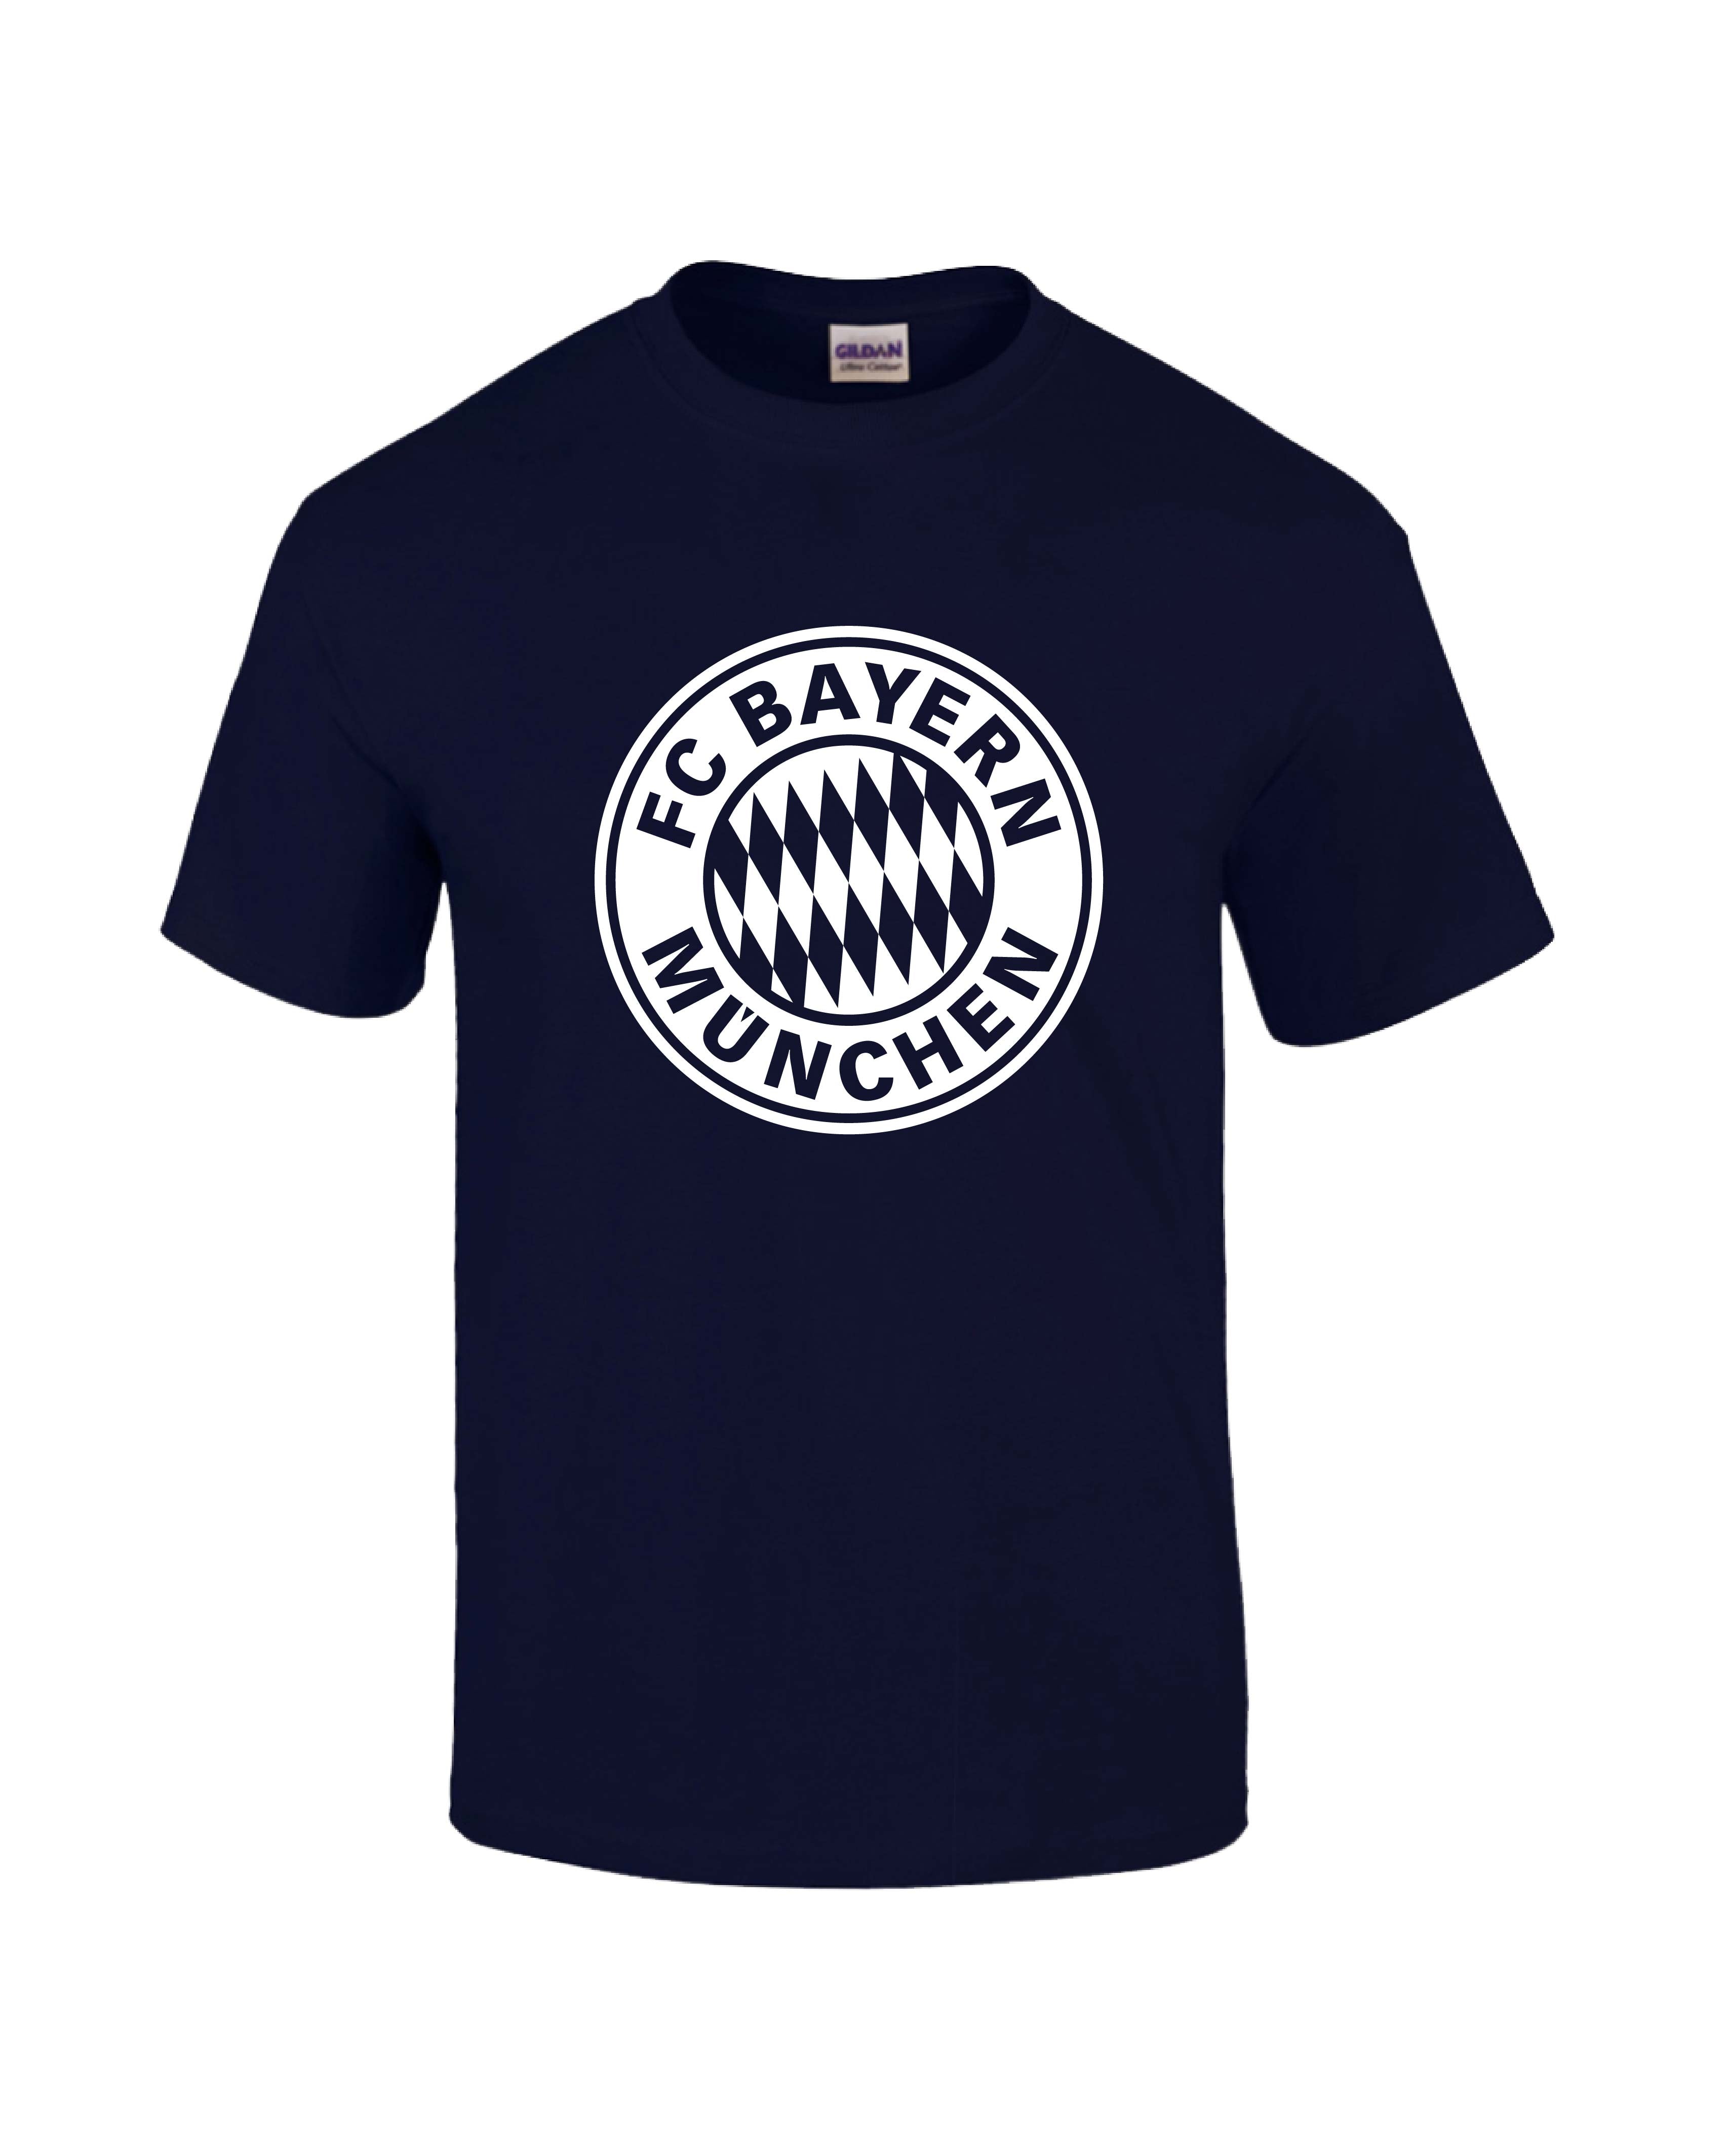 Bayern Munich Crest T-Shirt - Mens